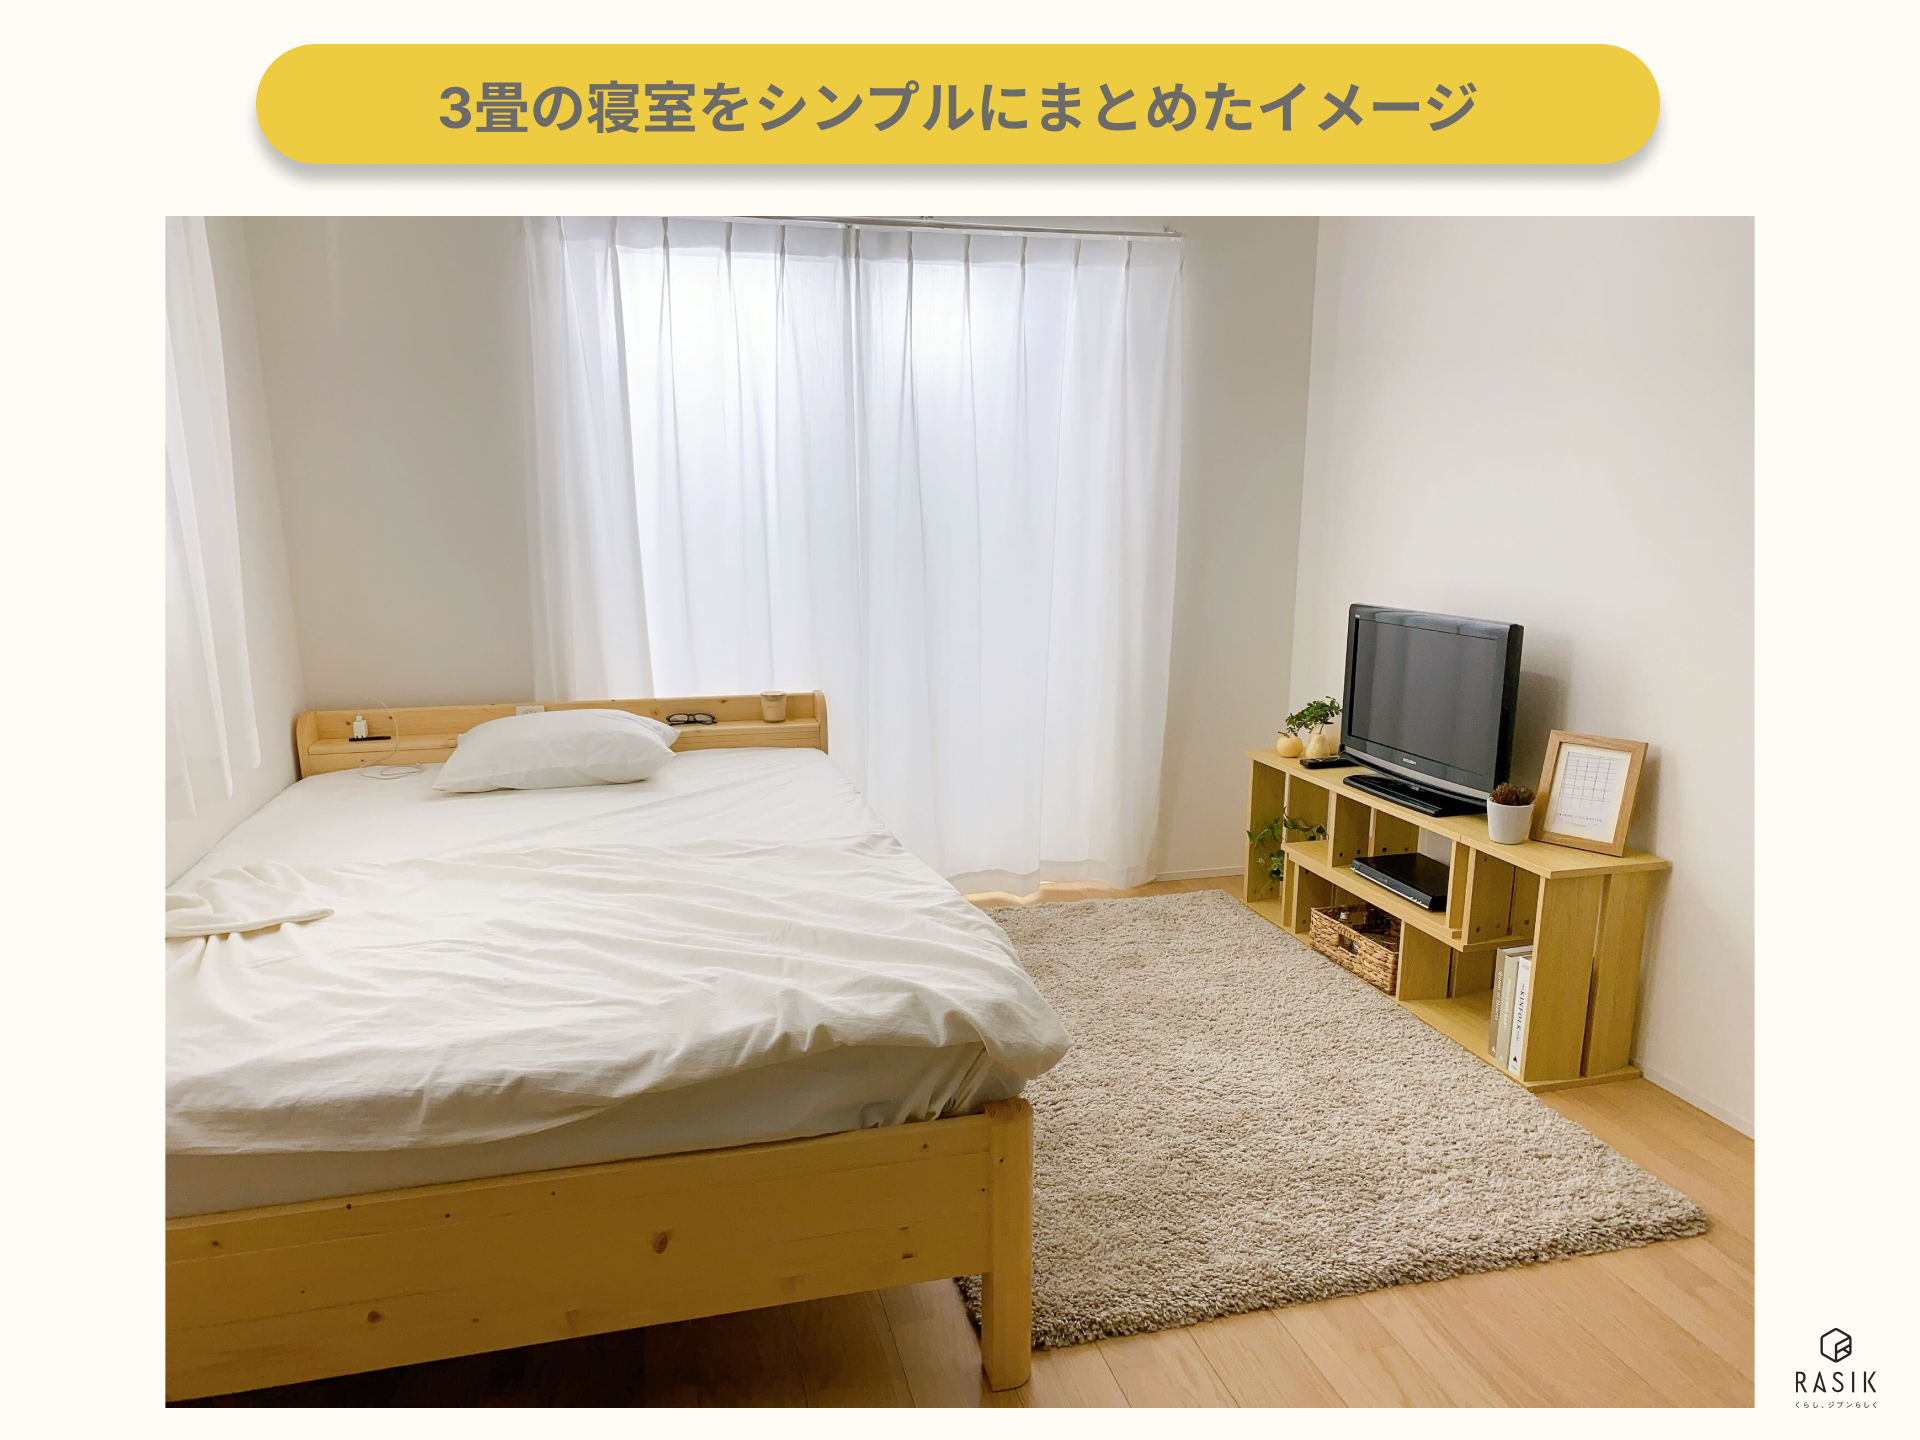 3畳の寝室をシンプルにまとめたイメージ